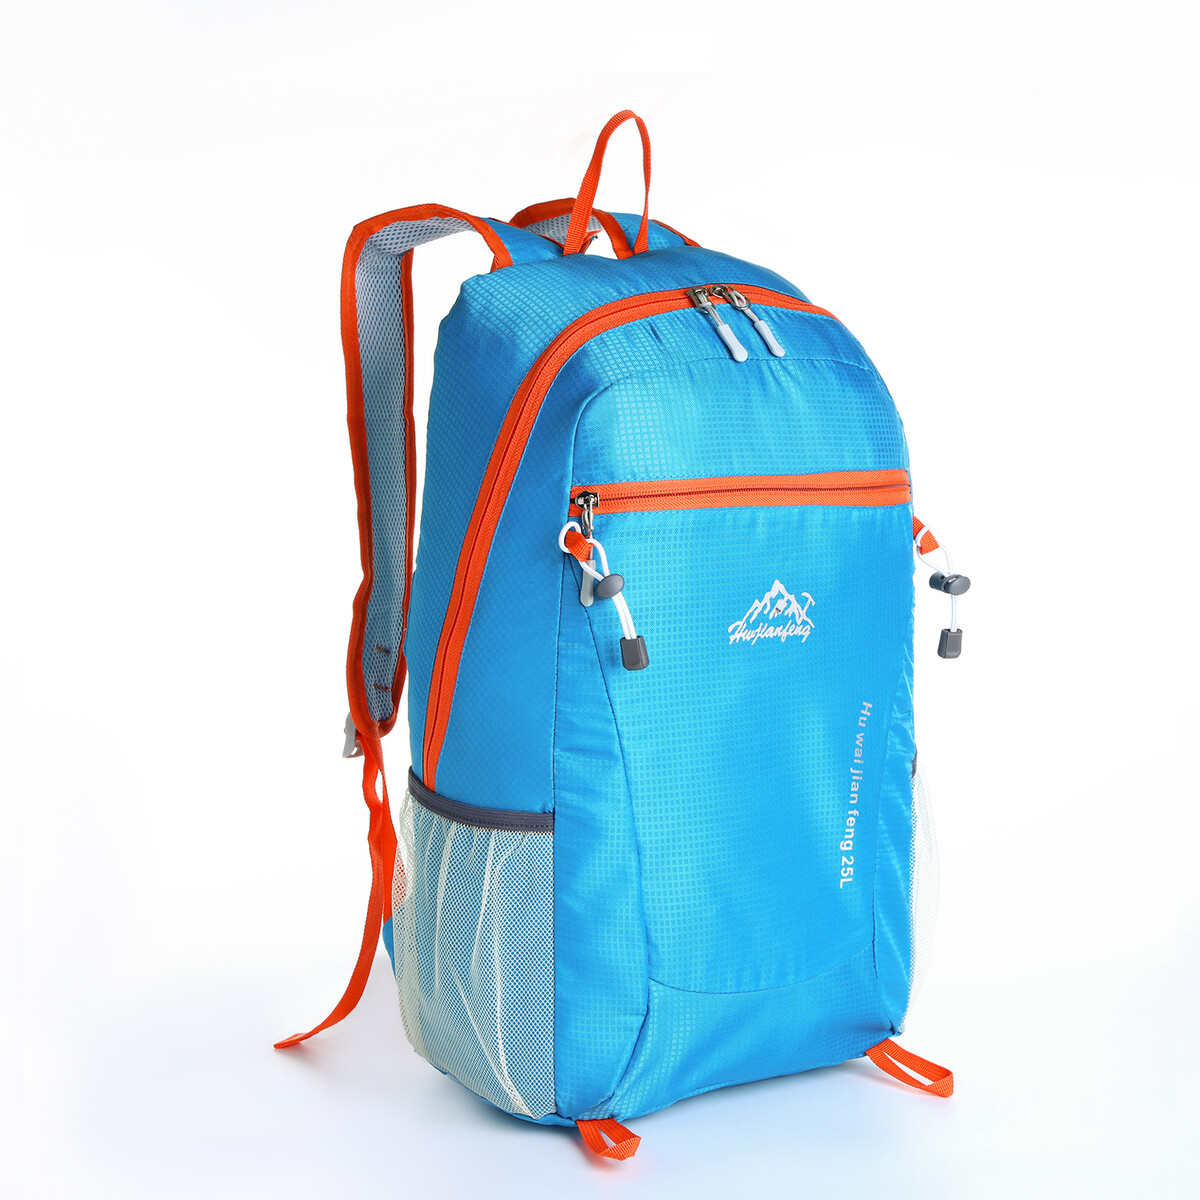 Рюкзак туристический 25л, складной, водонепроницаемый, на молнии, 4 кармана, цвет голубой рюкзак nonstopika action бирюзовый складной